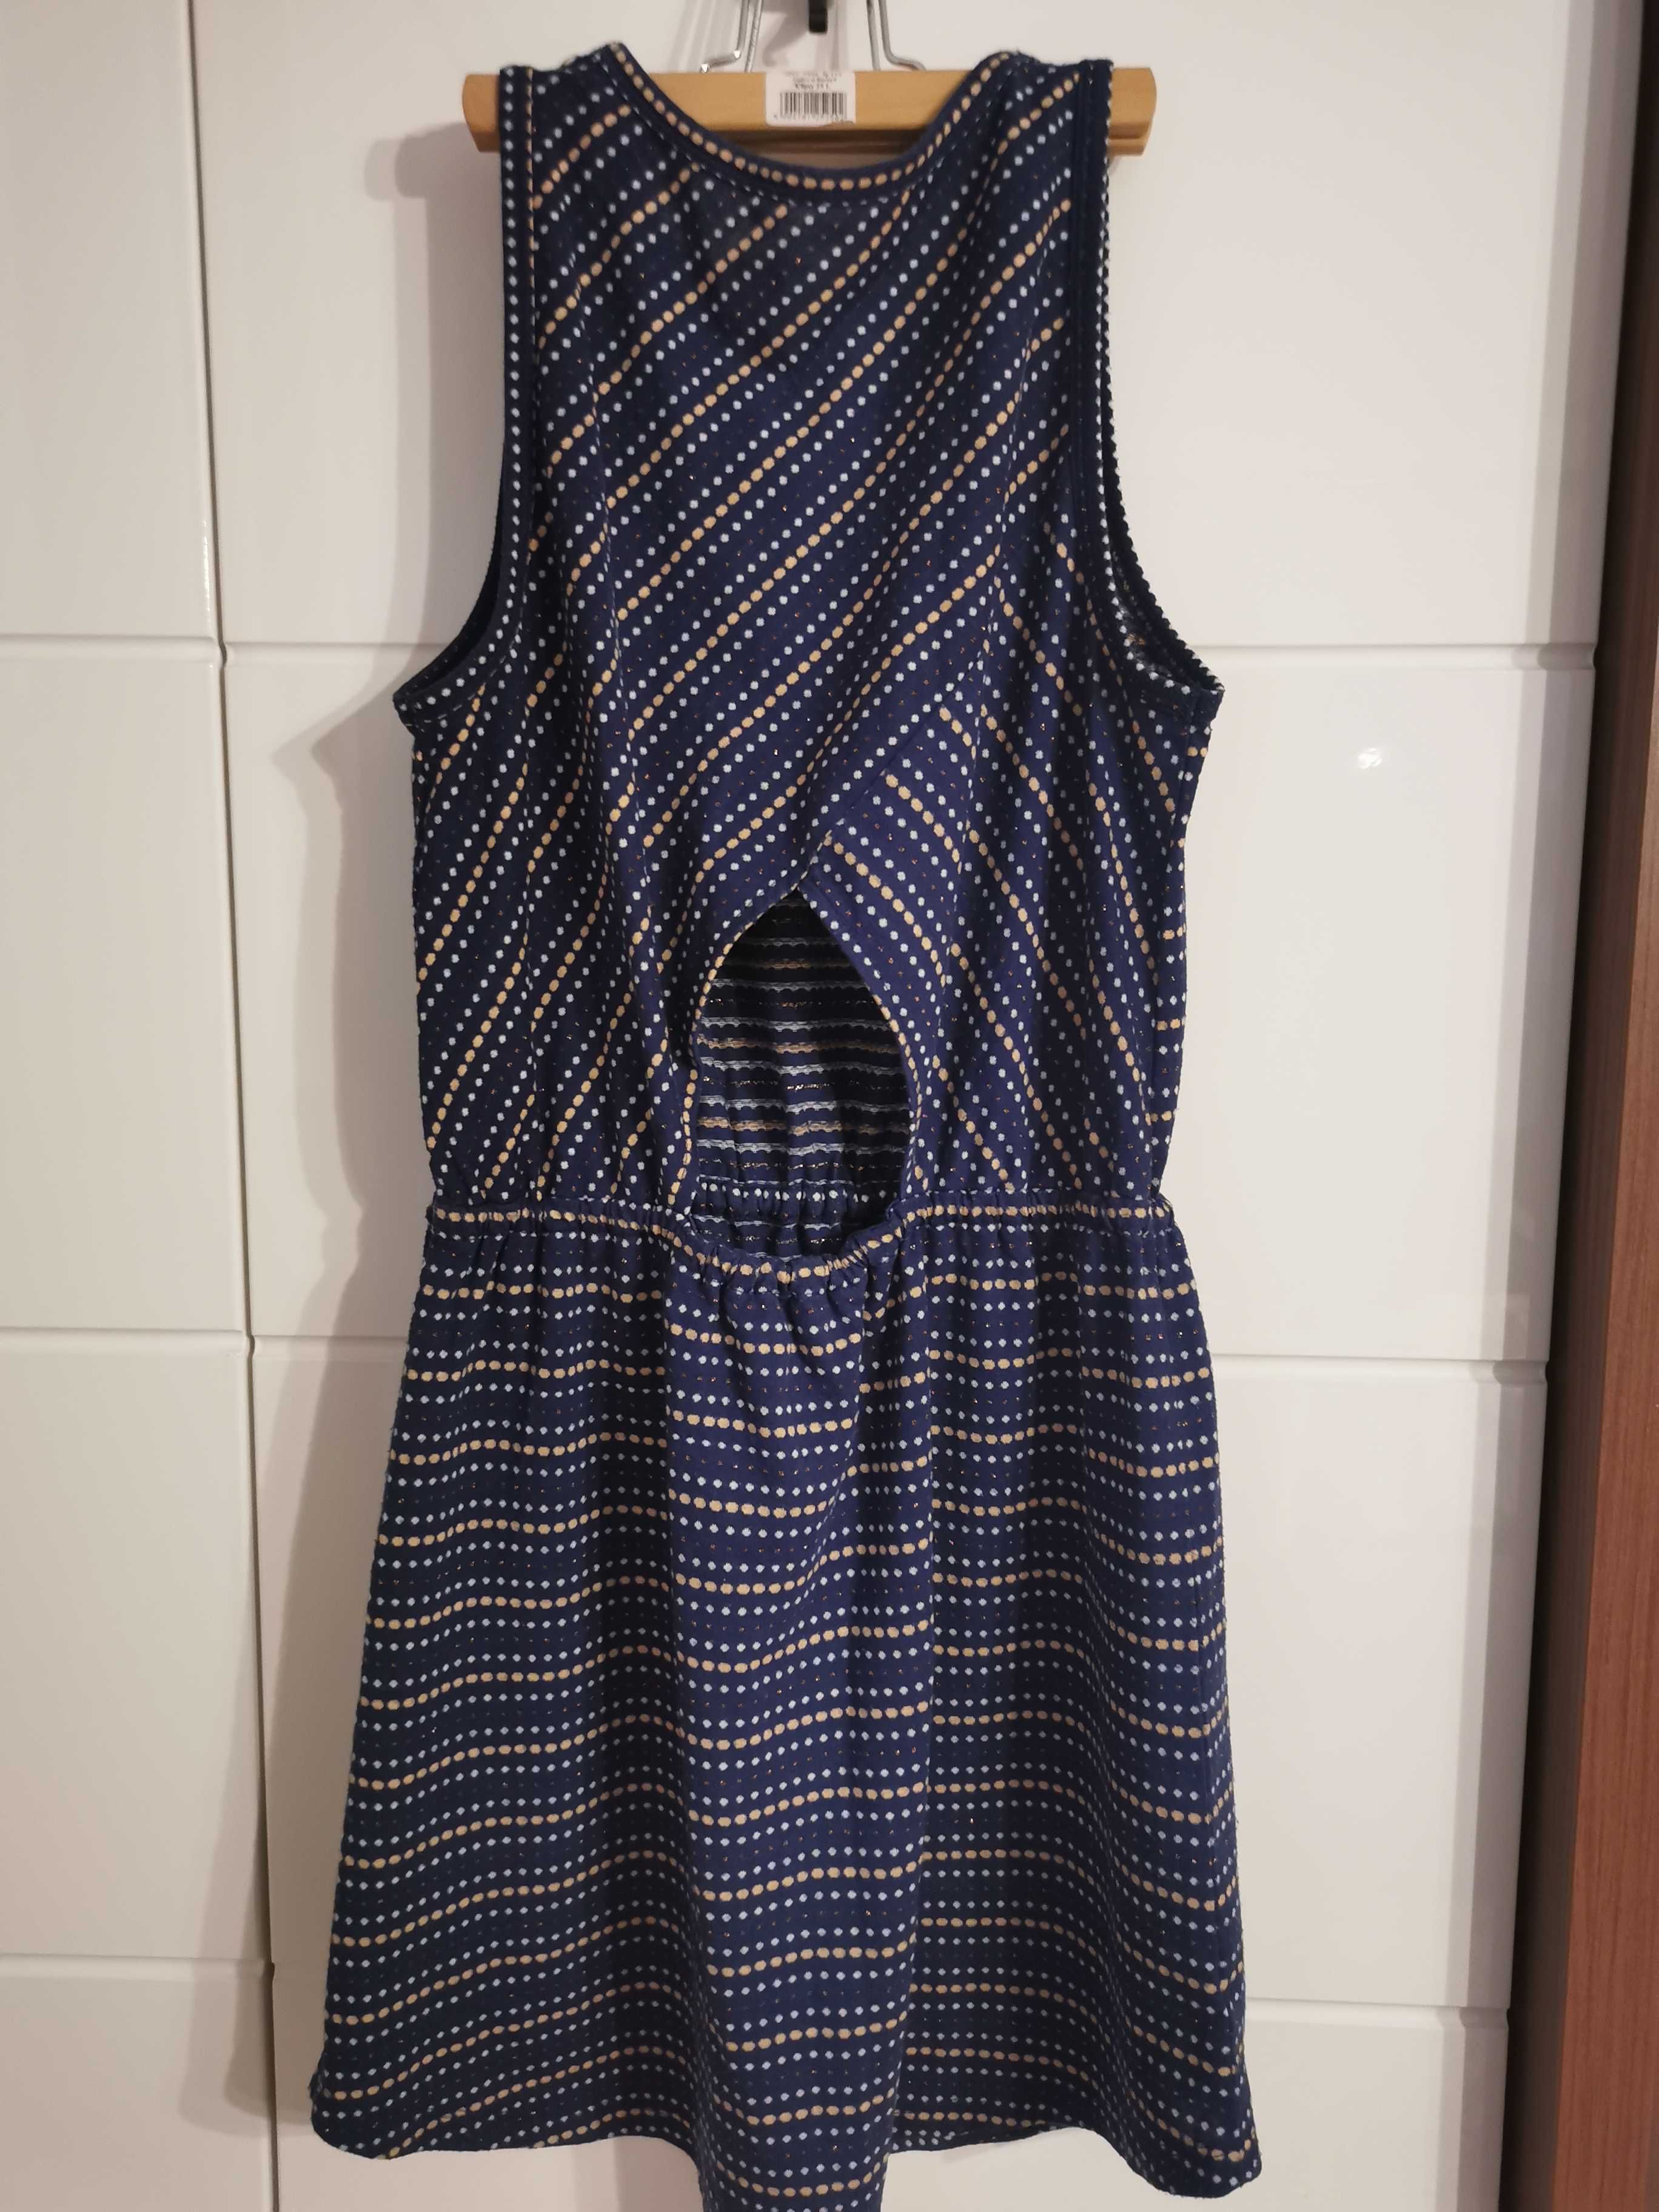 Plażowa sukienka, Loft, rozmiar xs/s